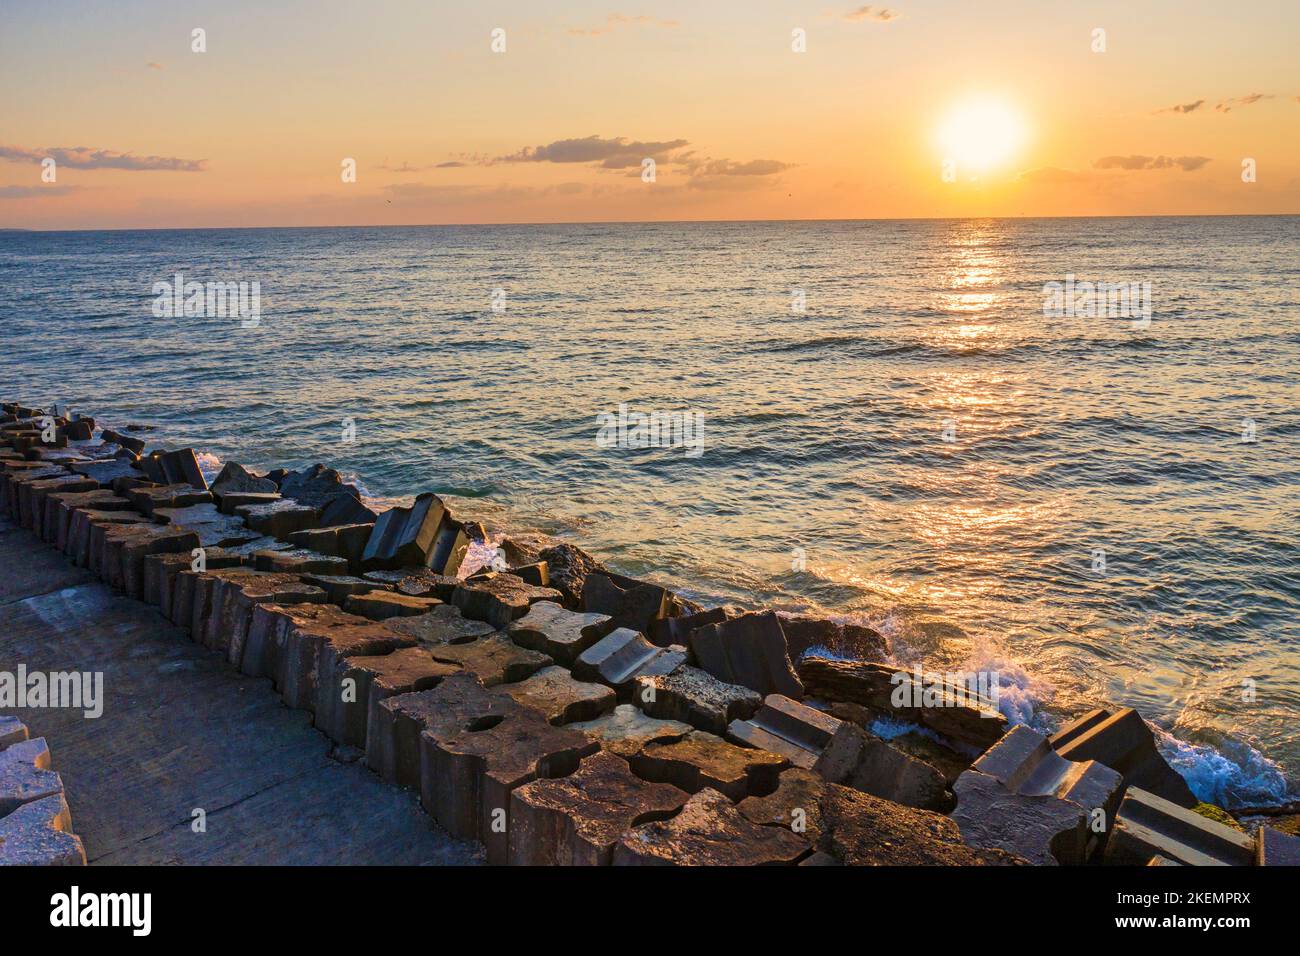 Vagues de mer éclaboussant au lever du soleil, panorama le matin à la mer Noire Banque D'Images